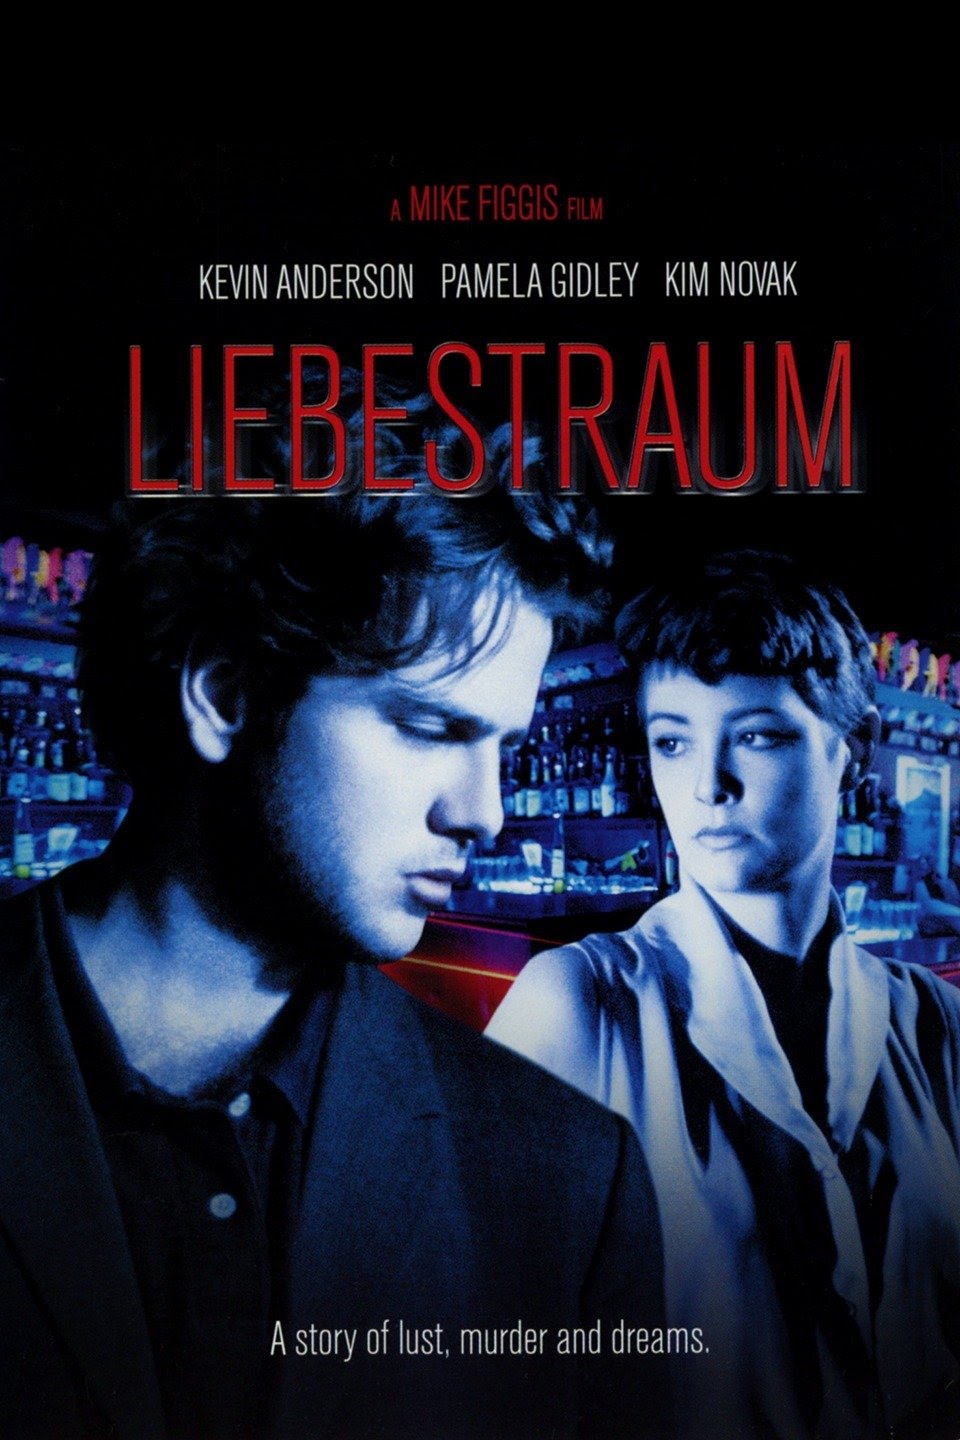 Liebestraum (1991) Dvdrip - Türkçe Dublaj Liebestraum%2B%25281991%2529